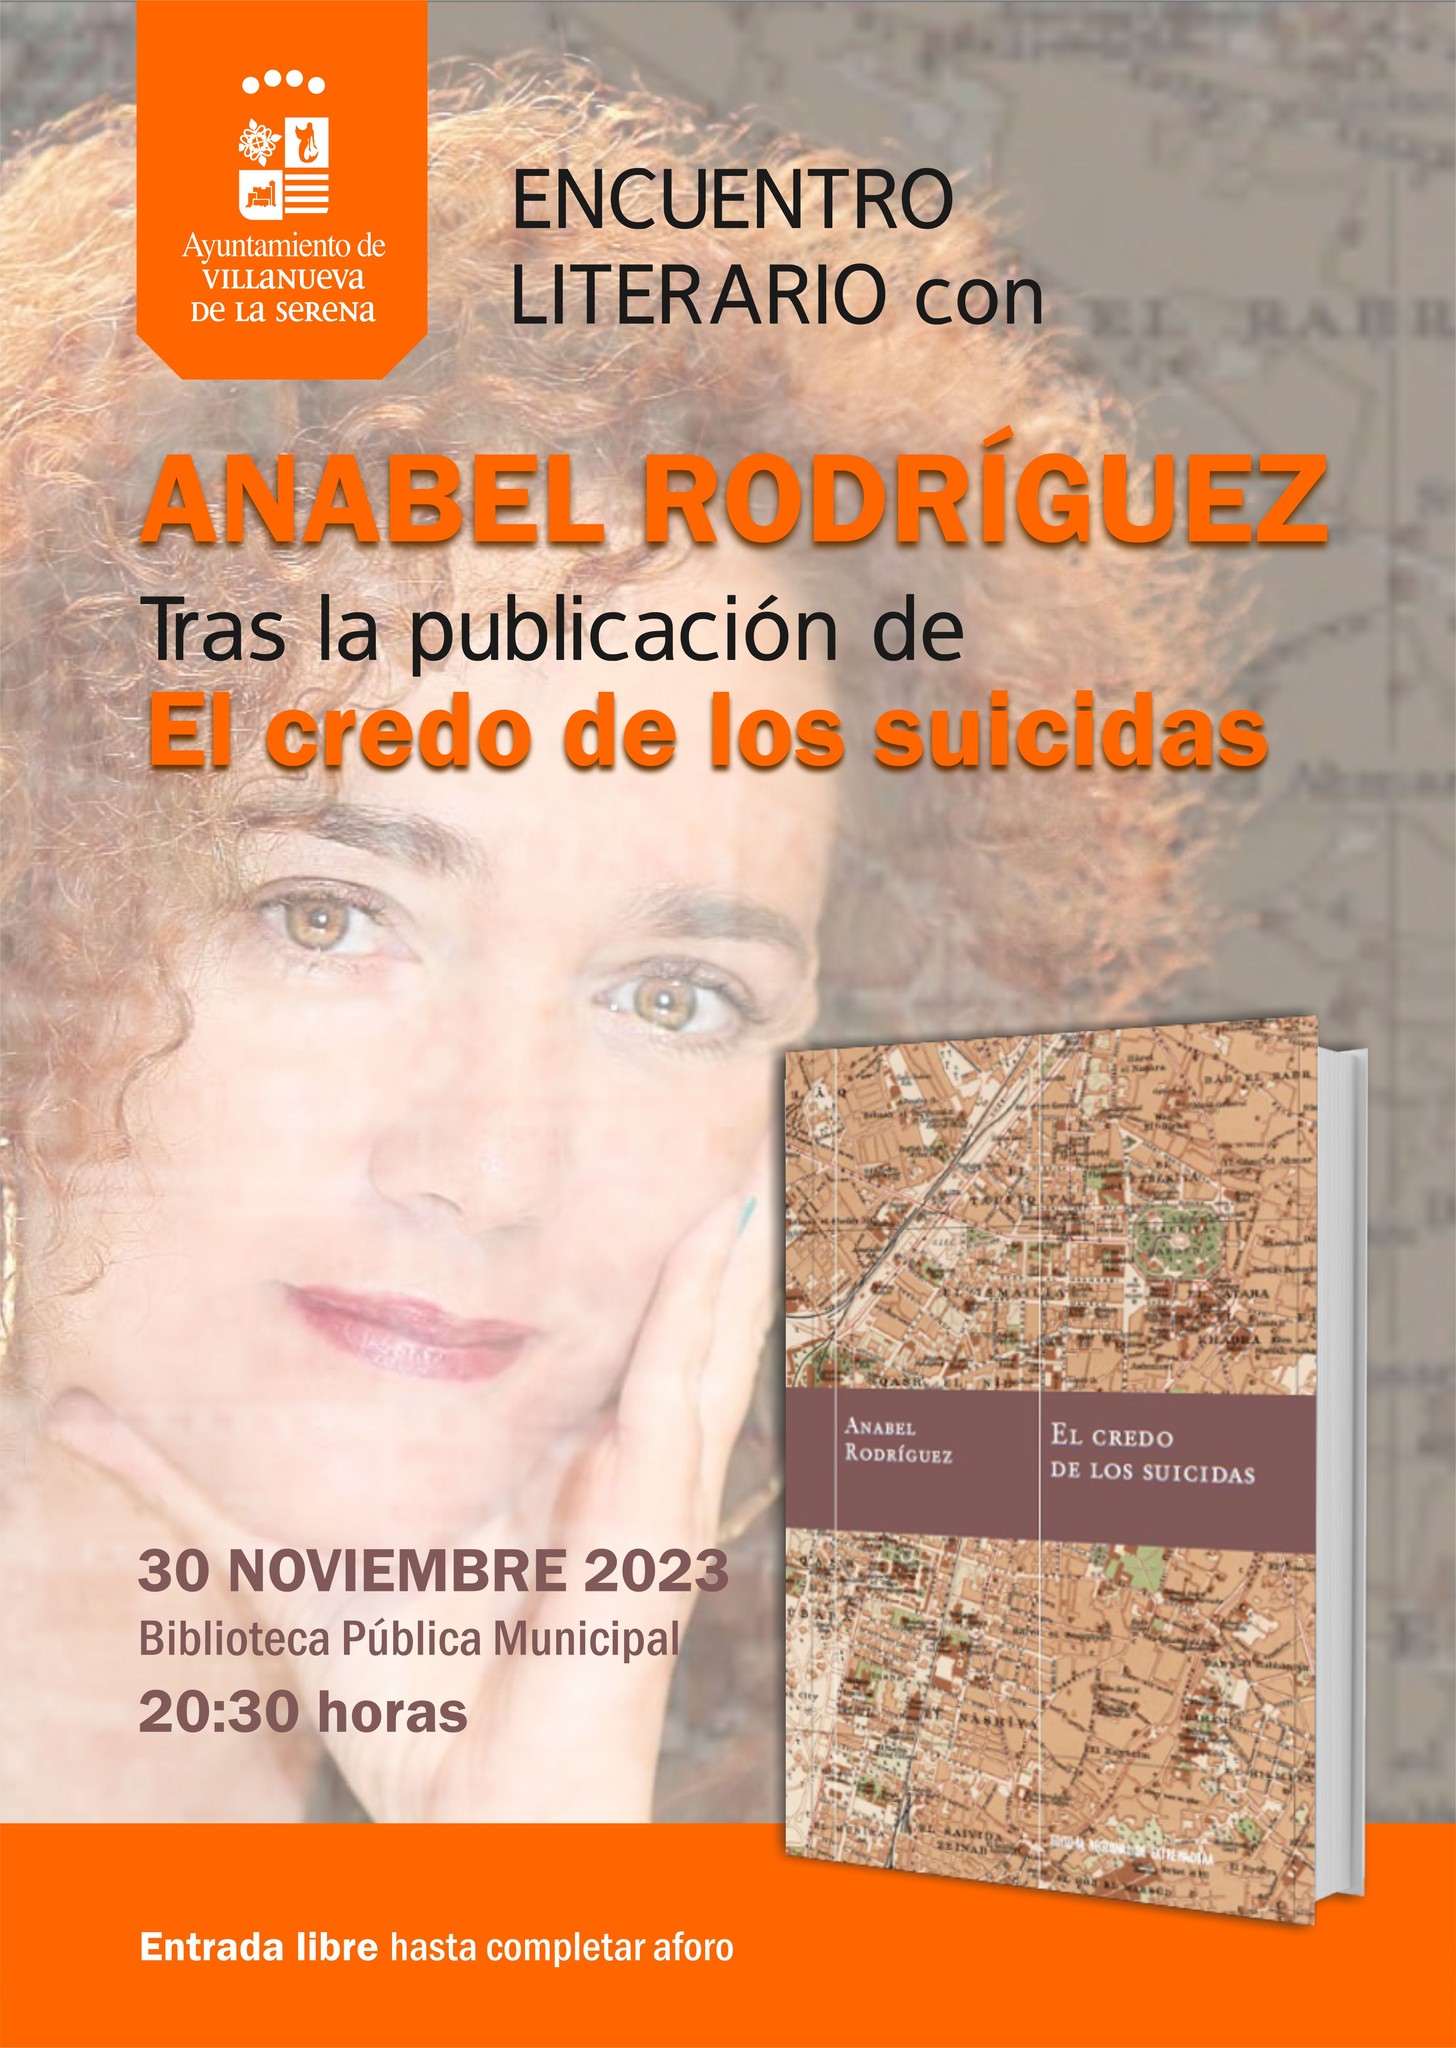 Jueves Literario: Encuentro literario con Anabel Rodríguez 'El credo de los suicidas'